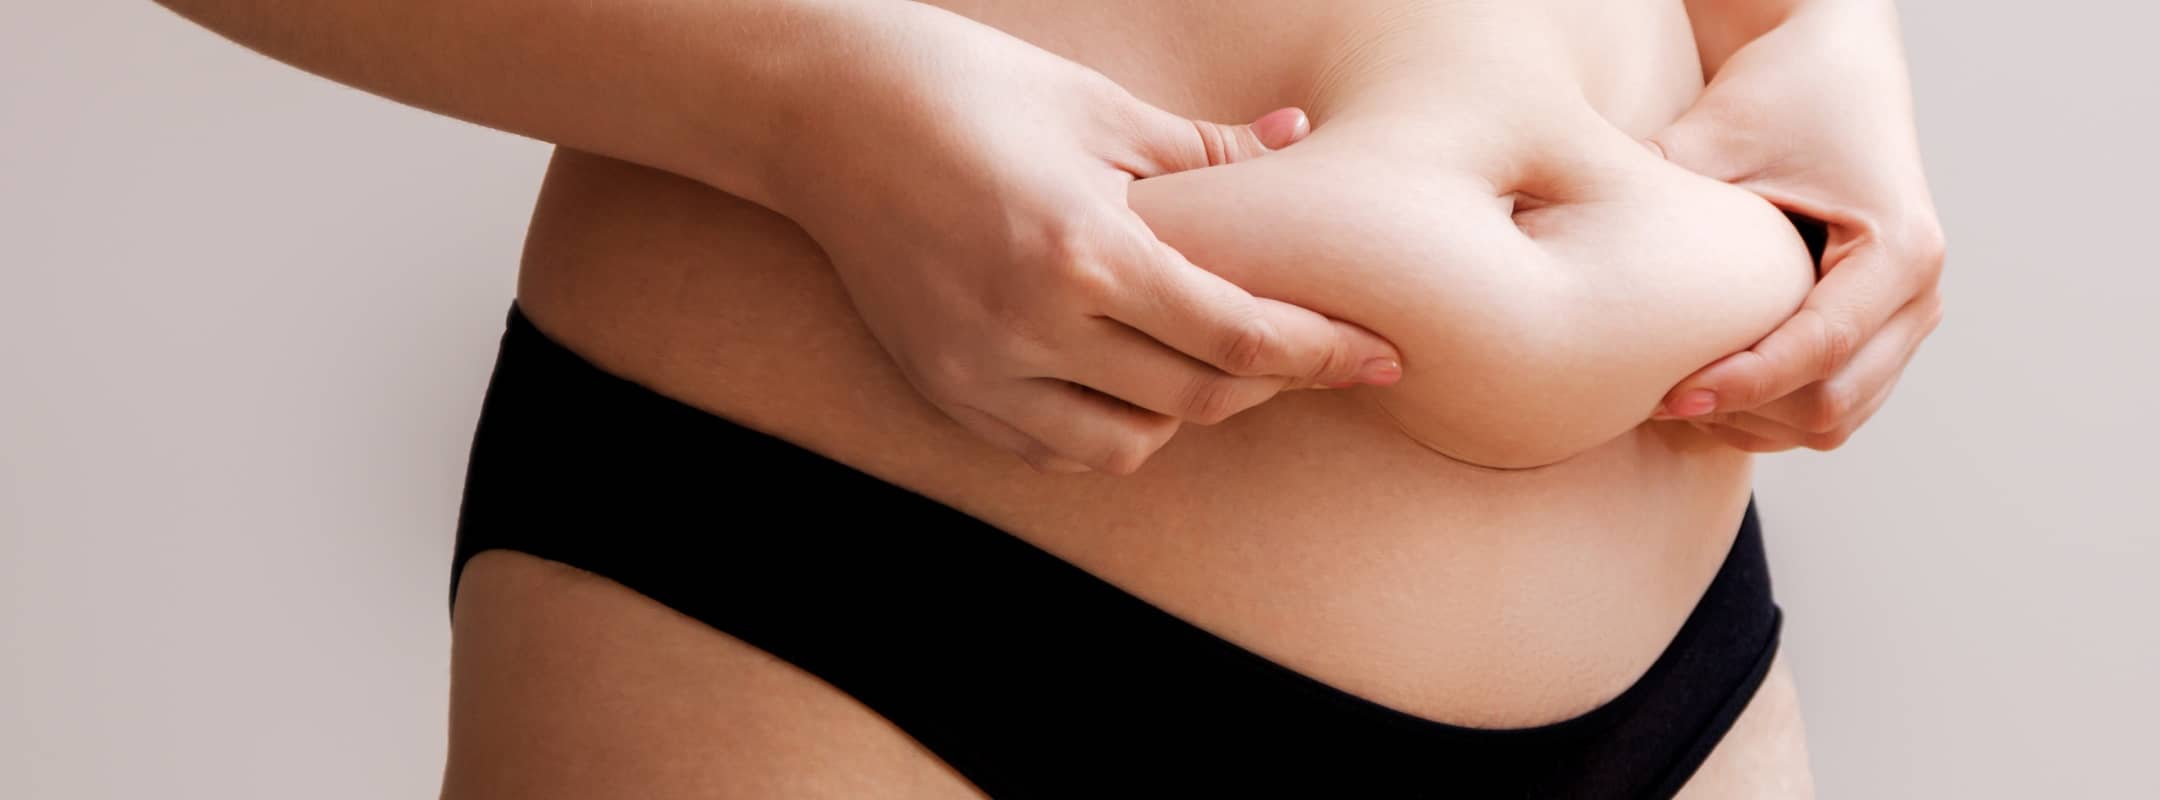 Comment savoir si on a besoin d’une abdominoplastie ? |Dr Lyor Hanan | Paris